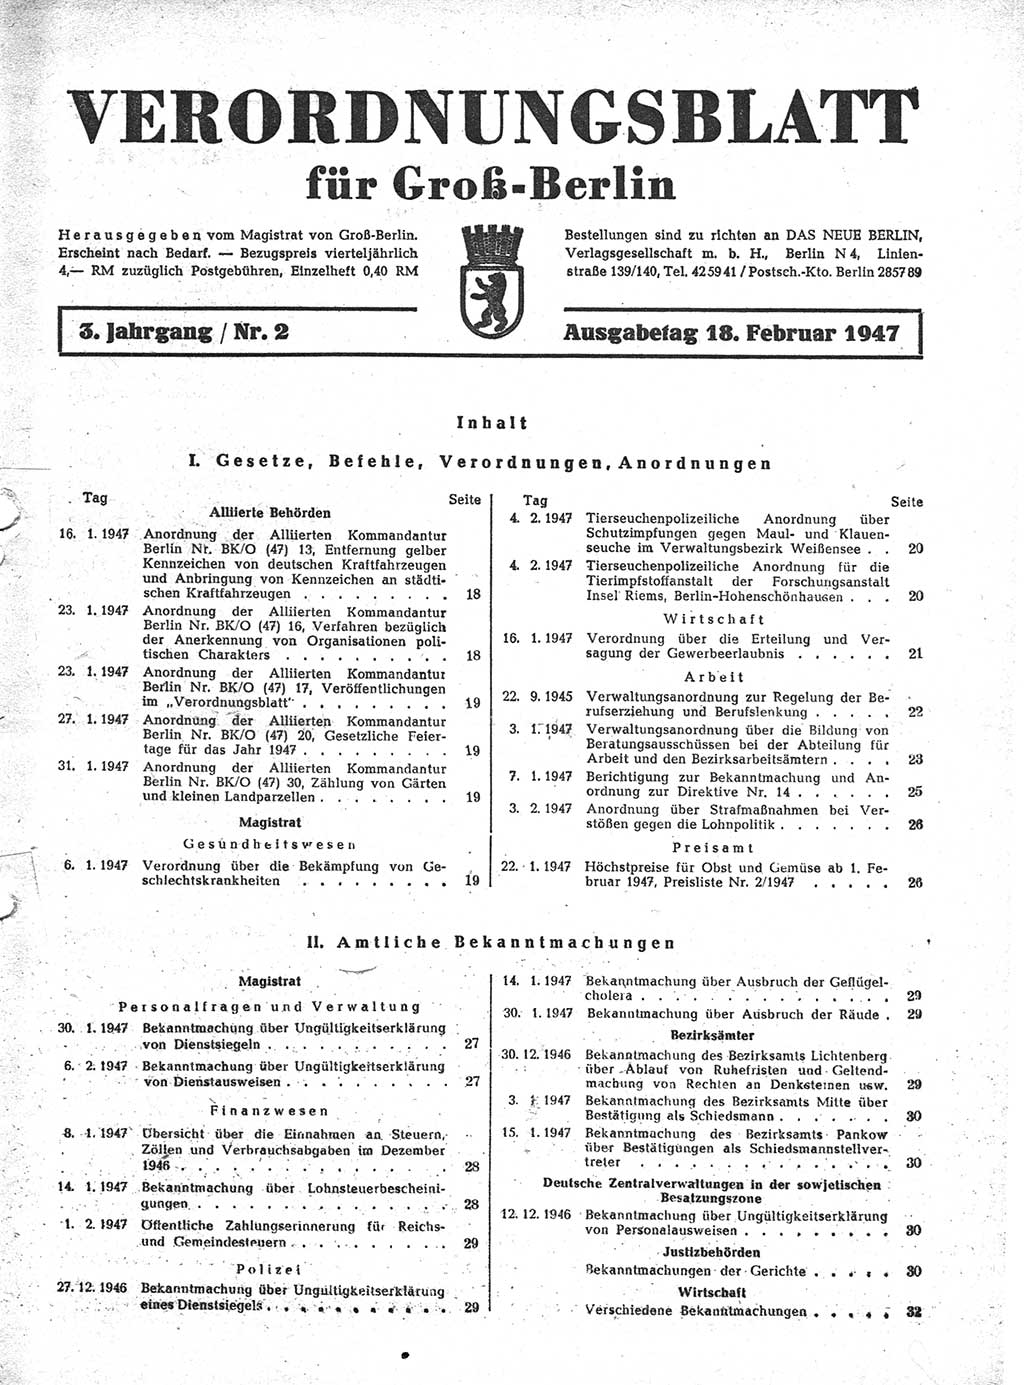 Verordnungsblatt (VOBl.) für Groß-Berlin 1947, Seite 17 (VOBl. Bln. 1947, S. 17)